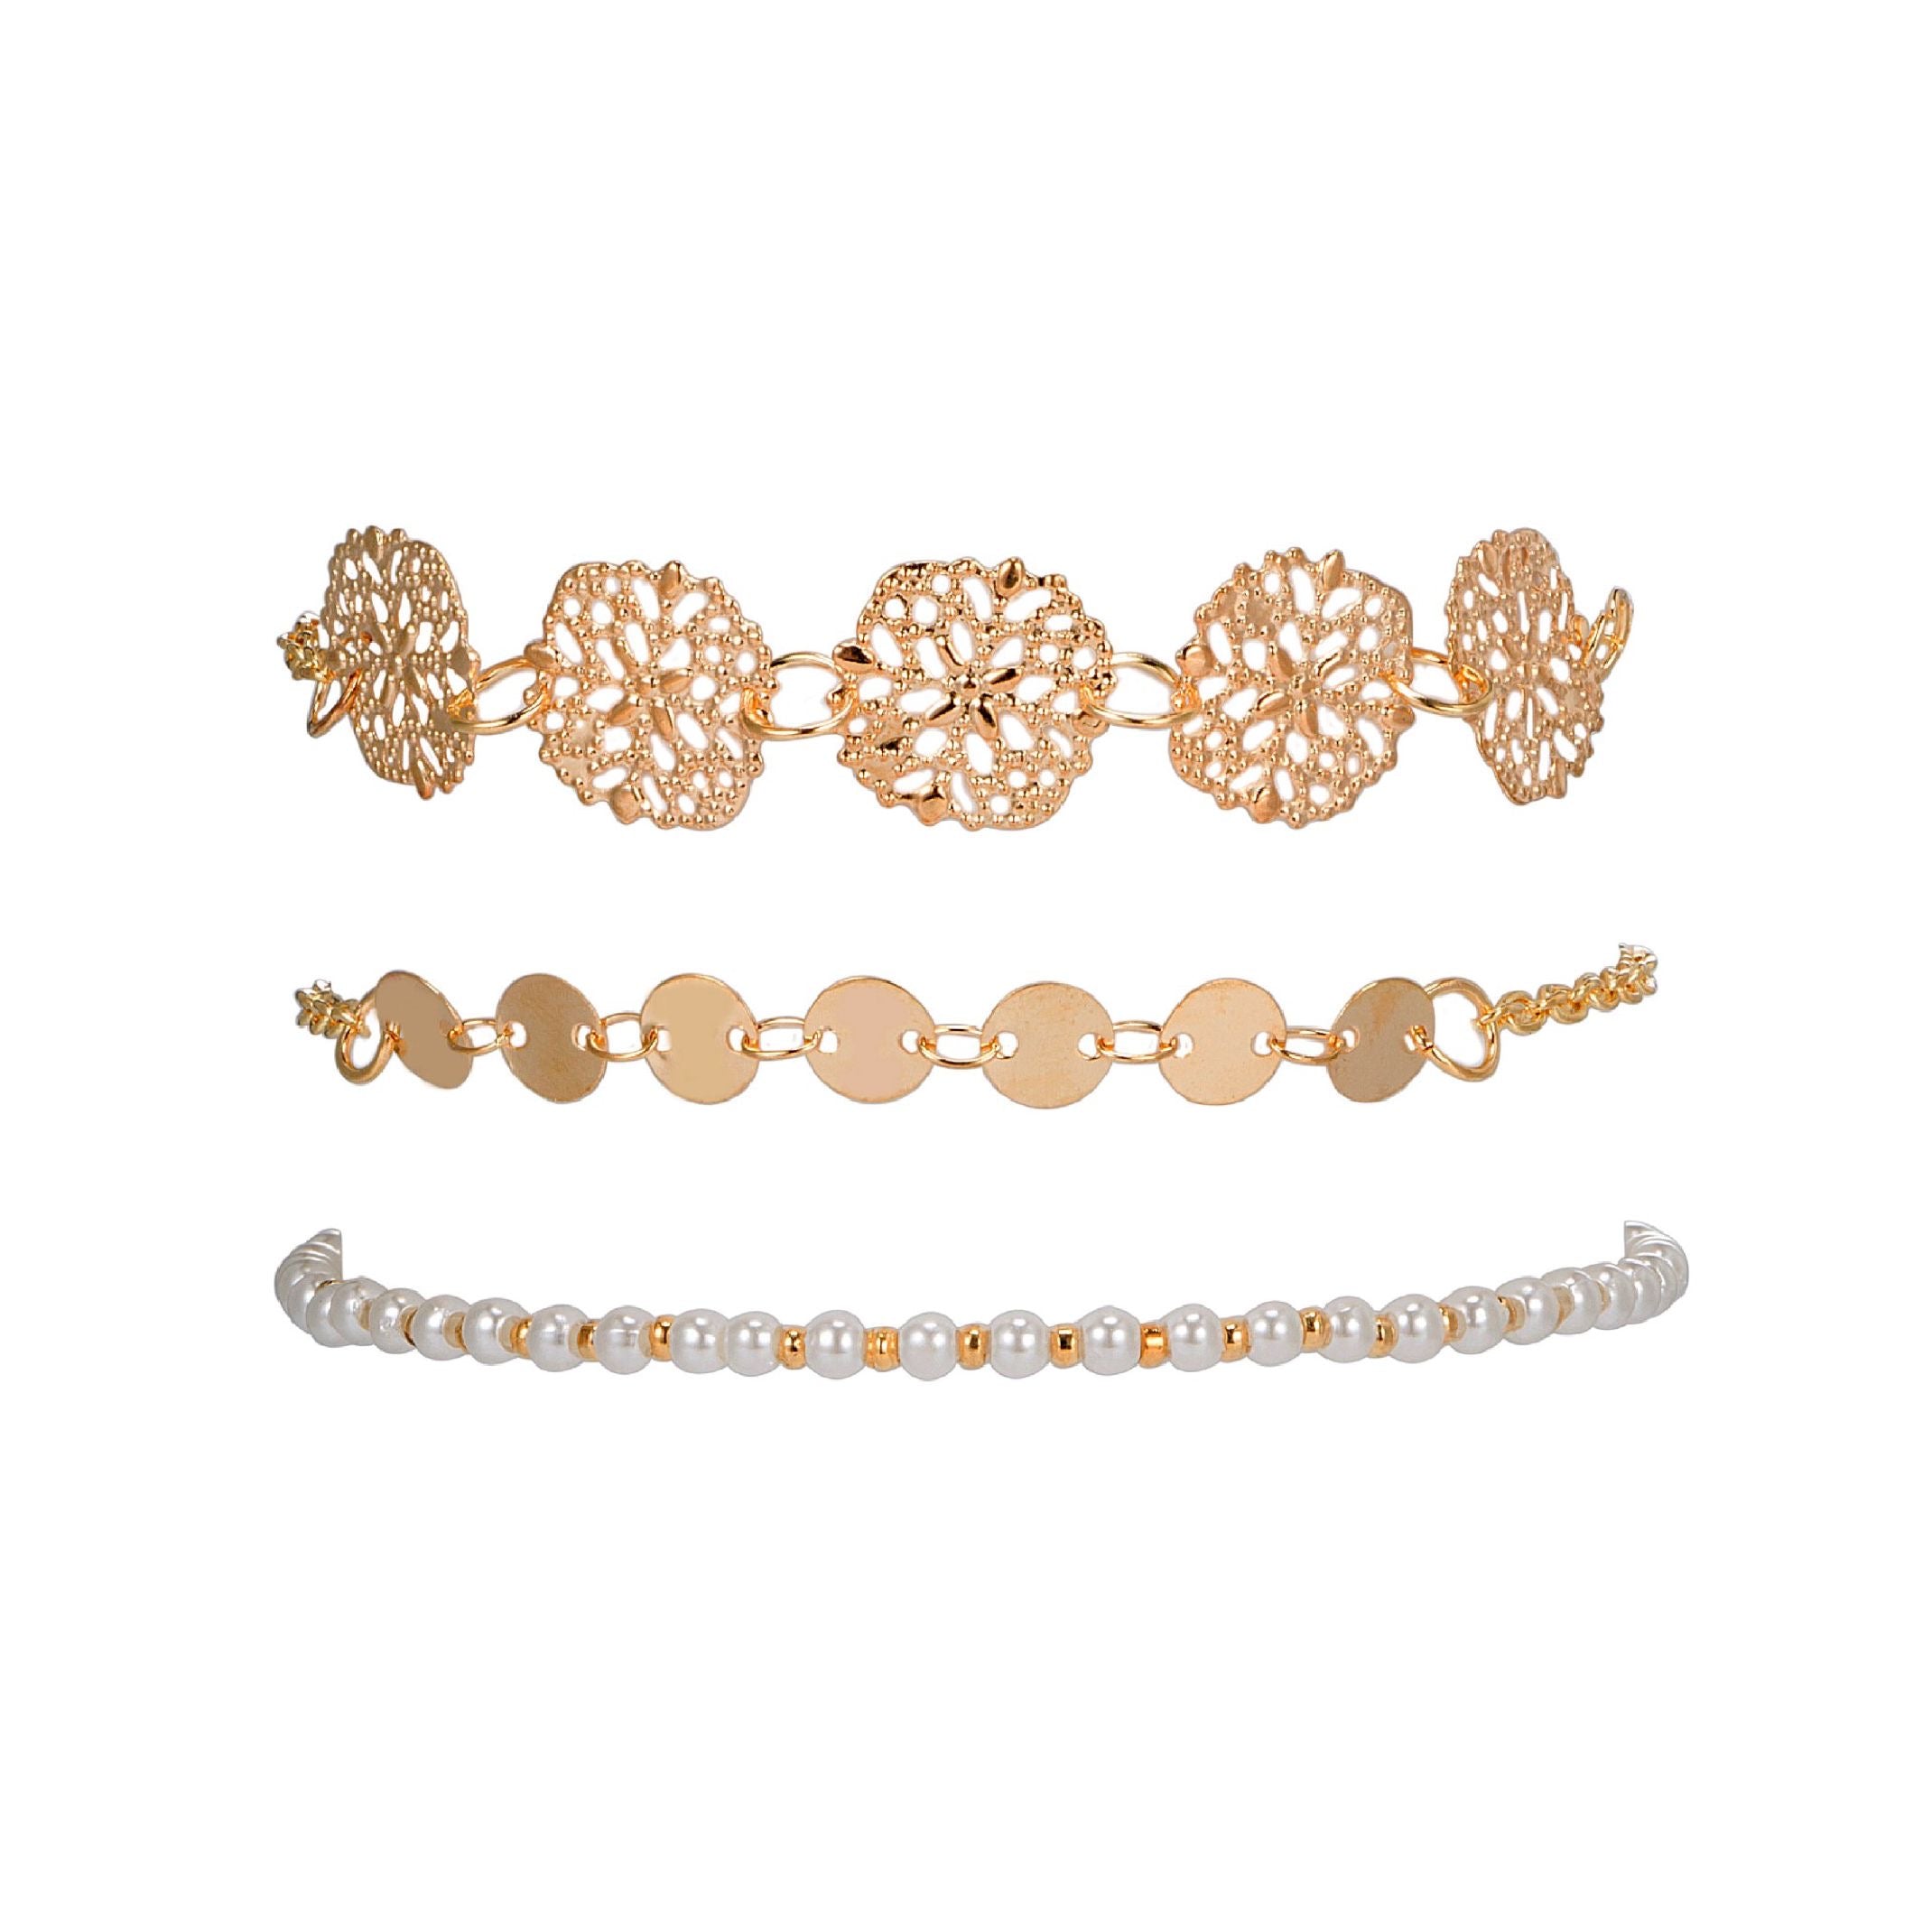 Gold and white bracelet set